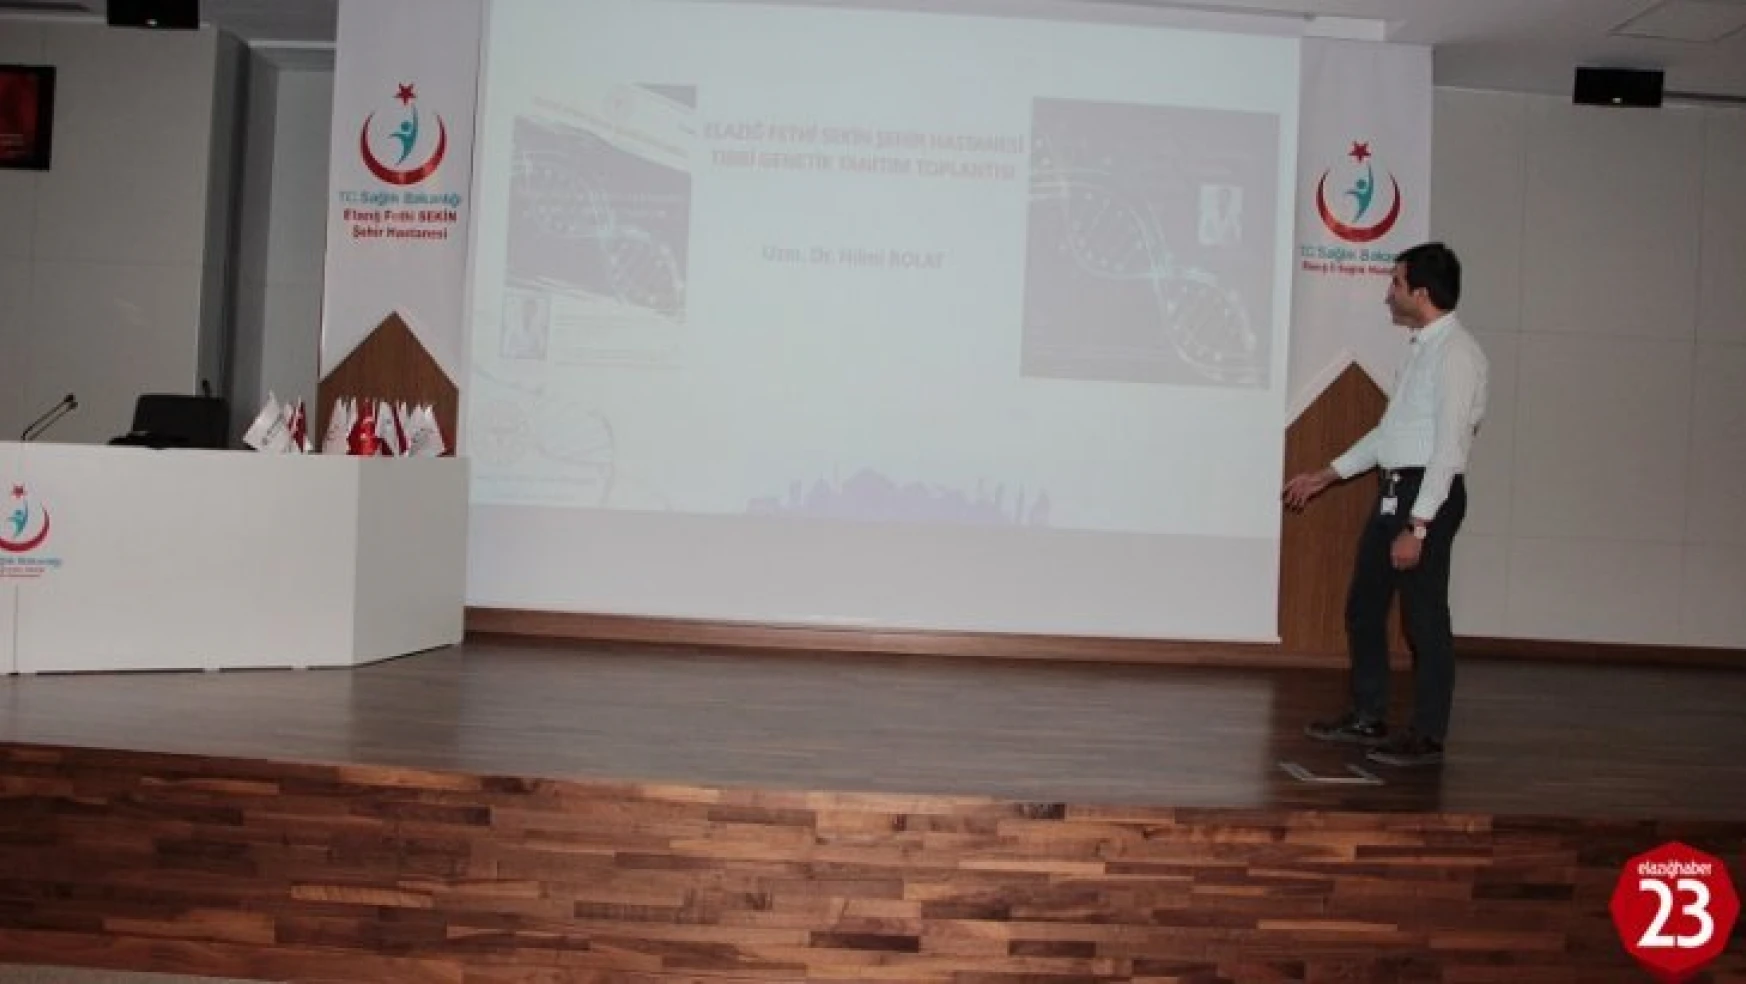 Elazığ Şehir Hastanesinde Tıbbi Genetik Tanıtım Toplantısı Düzenlendi